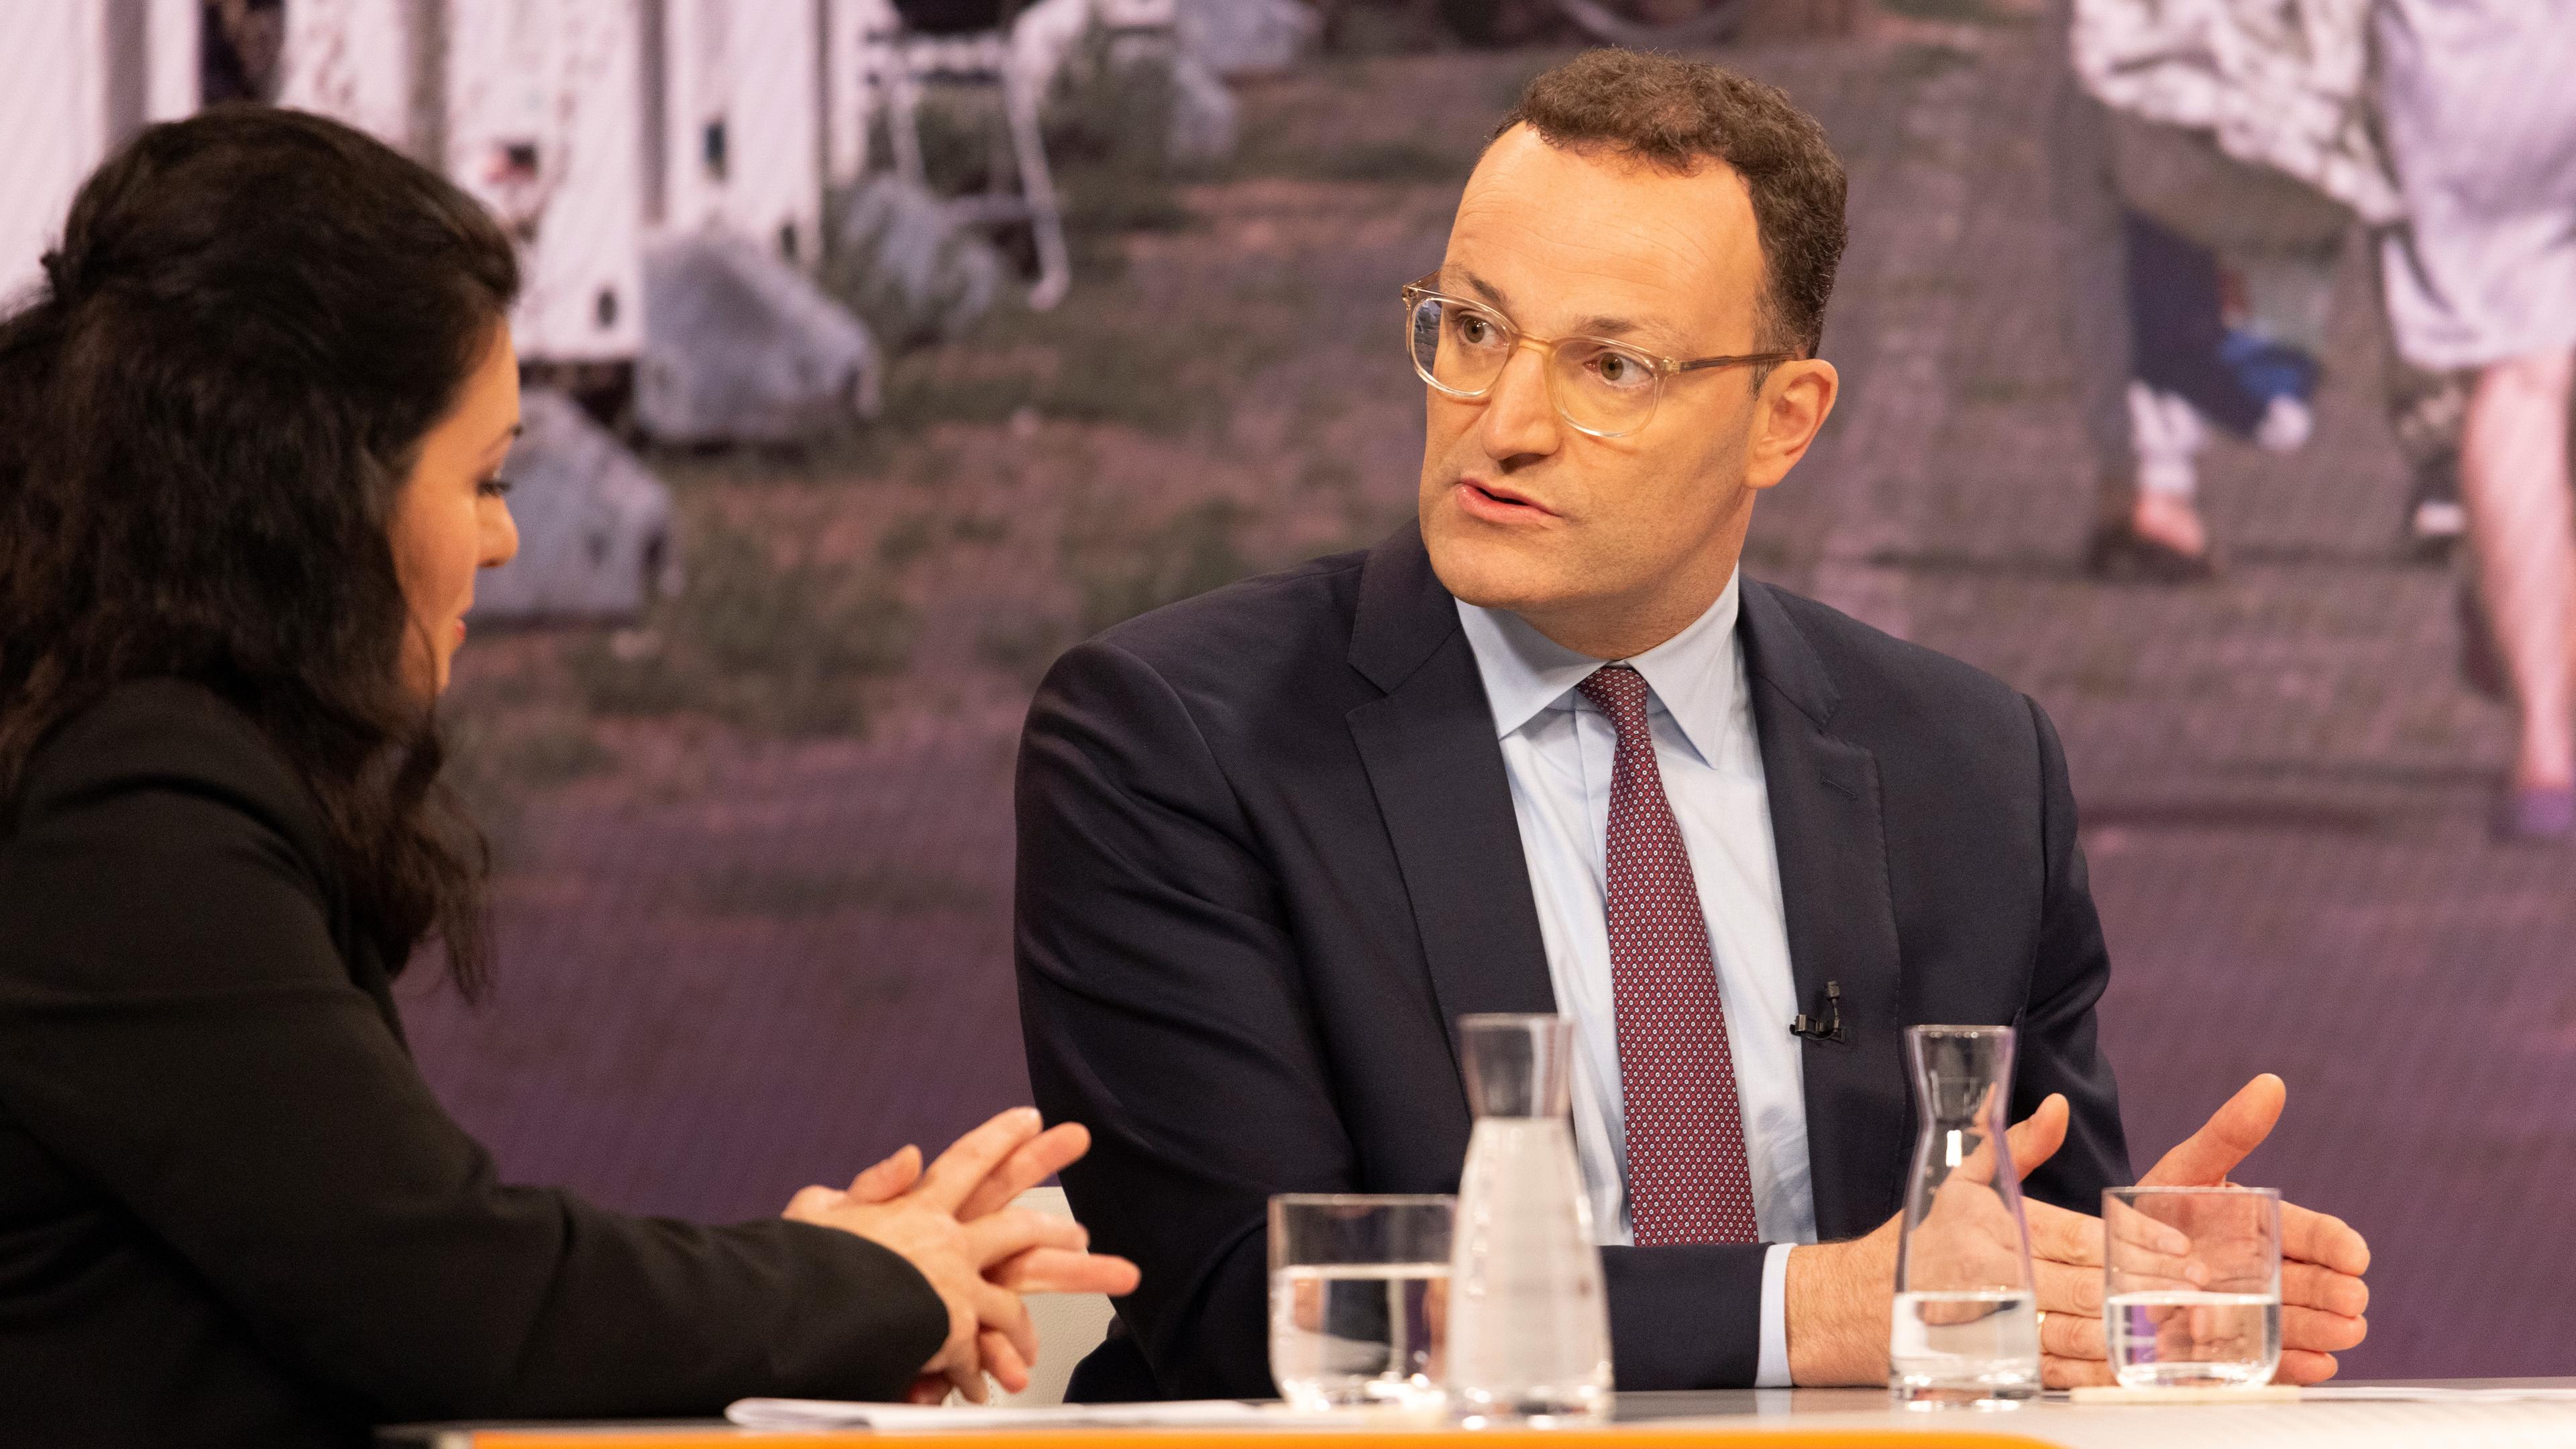 CDU-Politiker Jens Spahn zu Gast in der Sendung von Maybrit Illner.